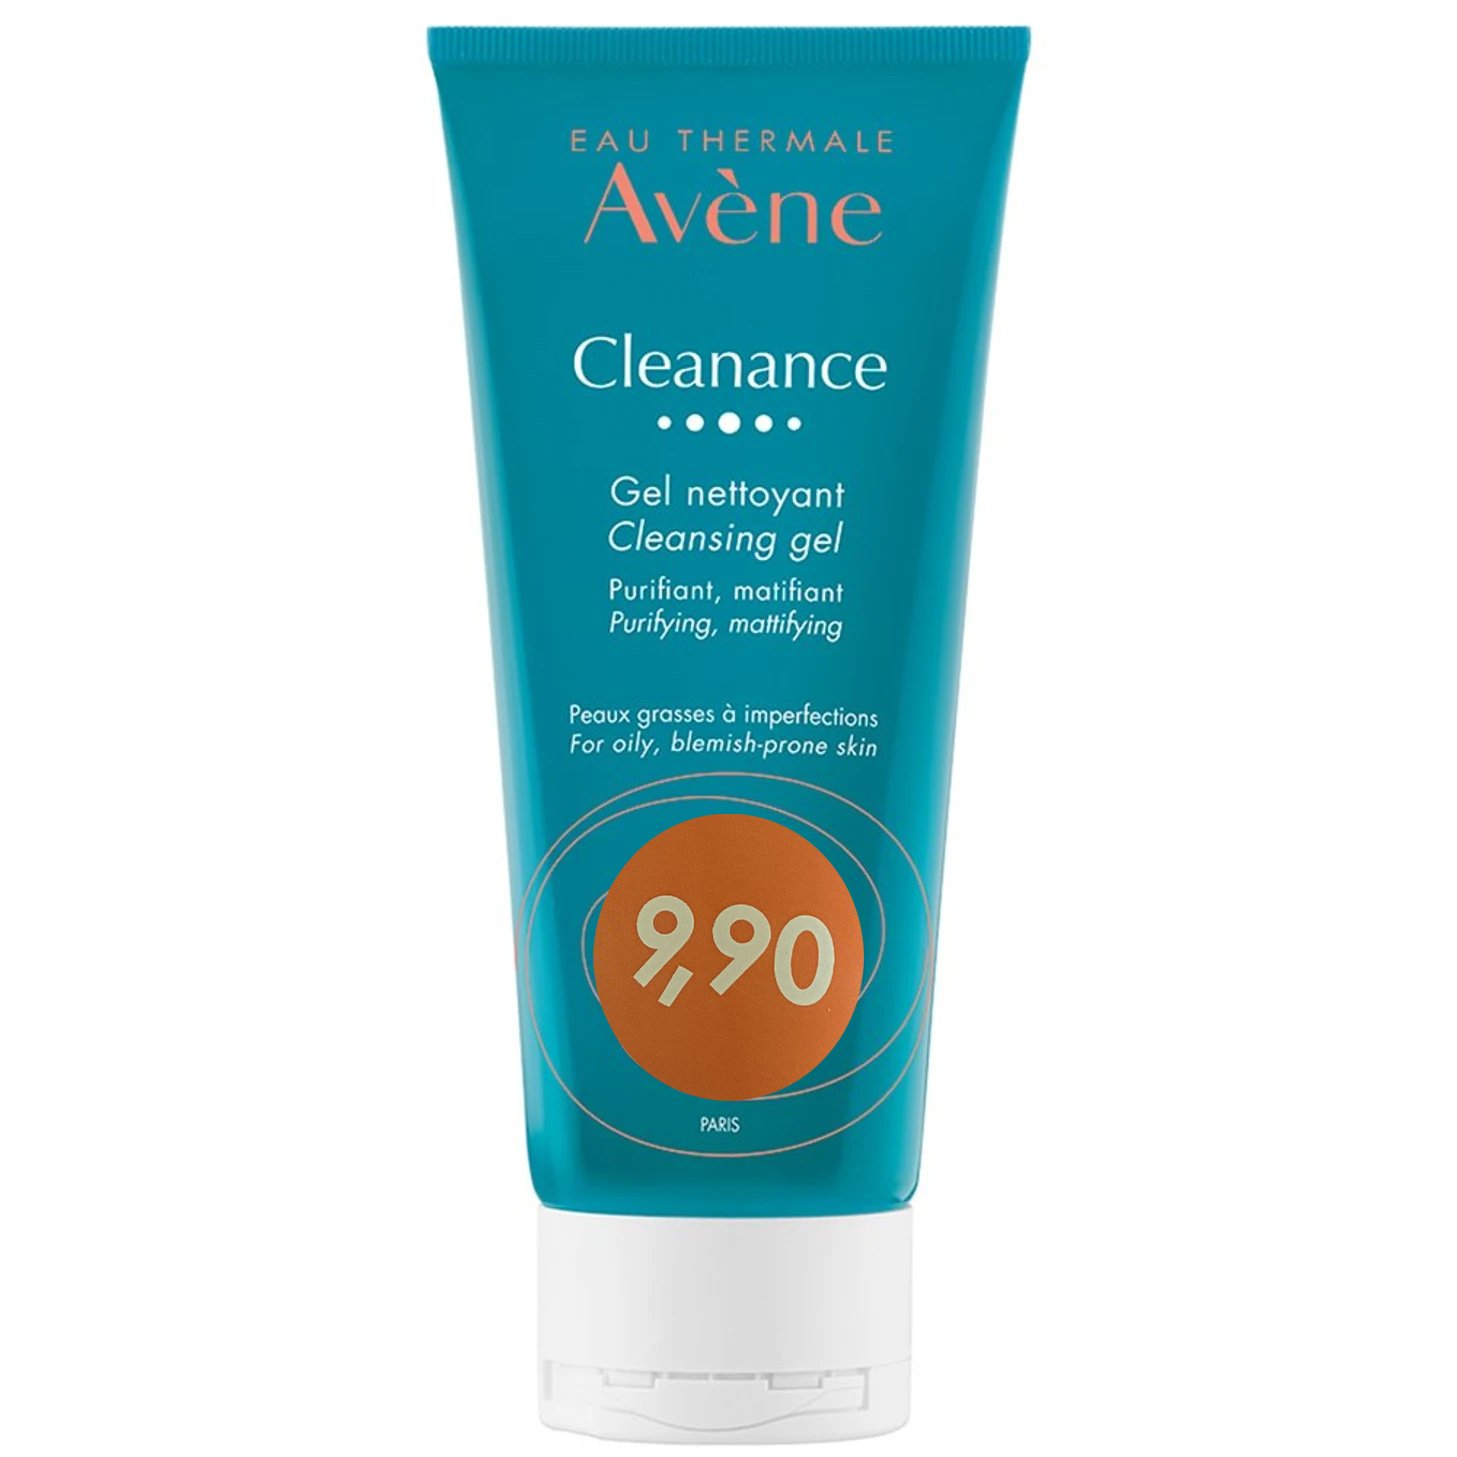 Avène Avene Promo Cleanance Gel Nettoyant Gel Καθαρισμού 200ml σε Ειδική Τιμή